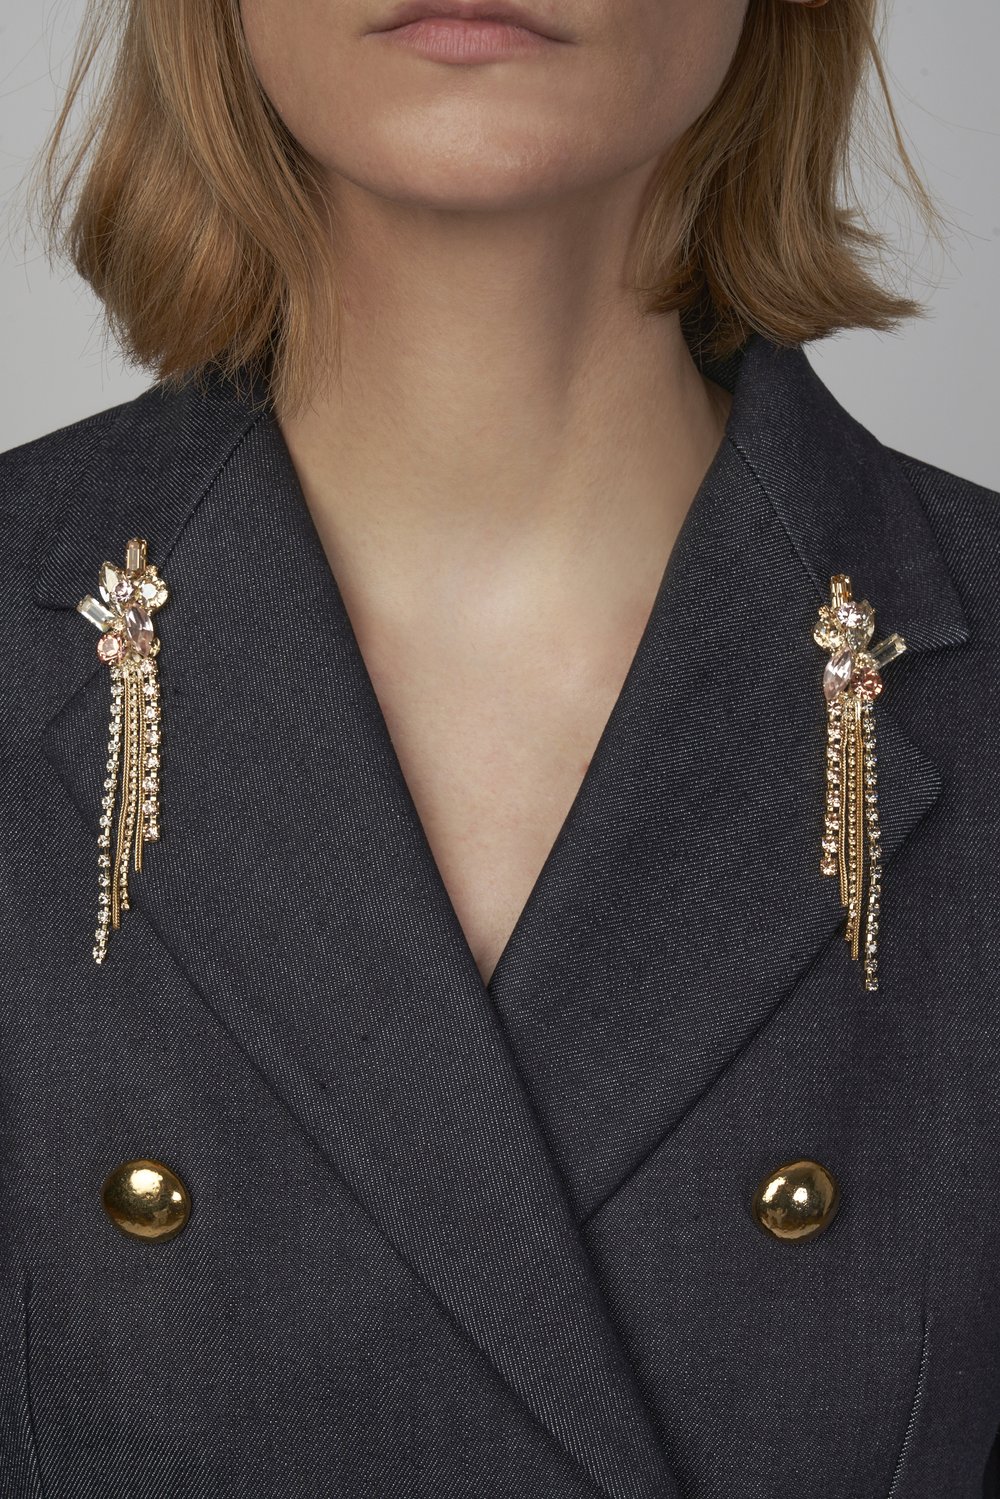 Pin for clothes — Julie de Libran Paris